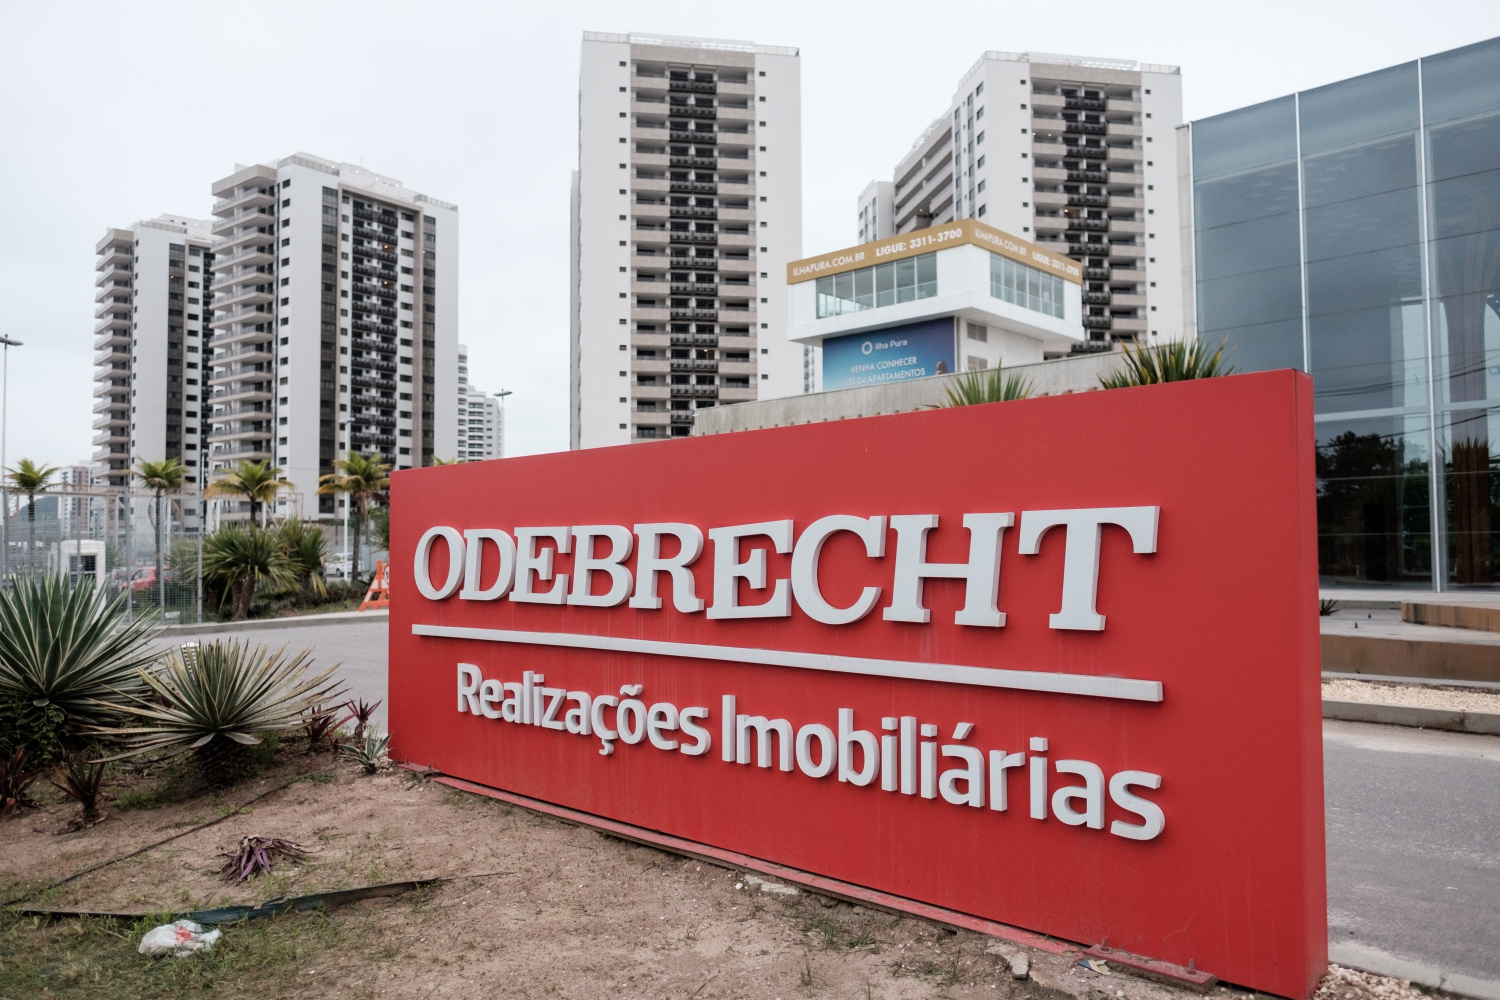 Brésil : Odebrecht règle l’affaire Petrobras en payant une forte amende